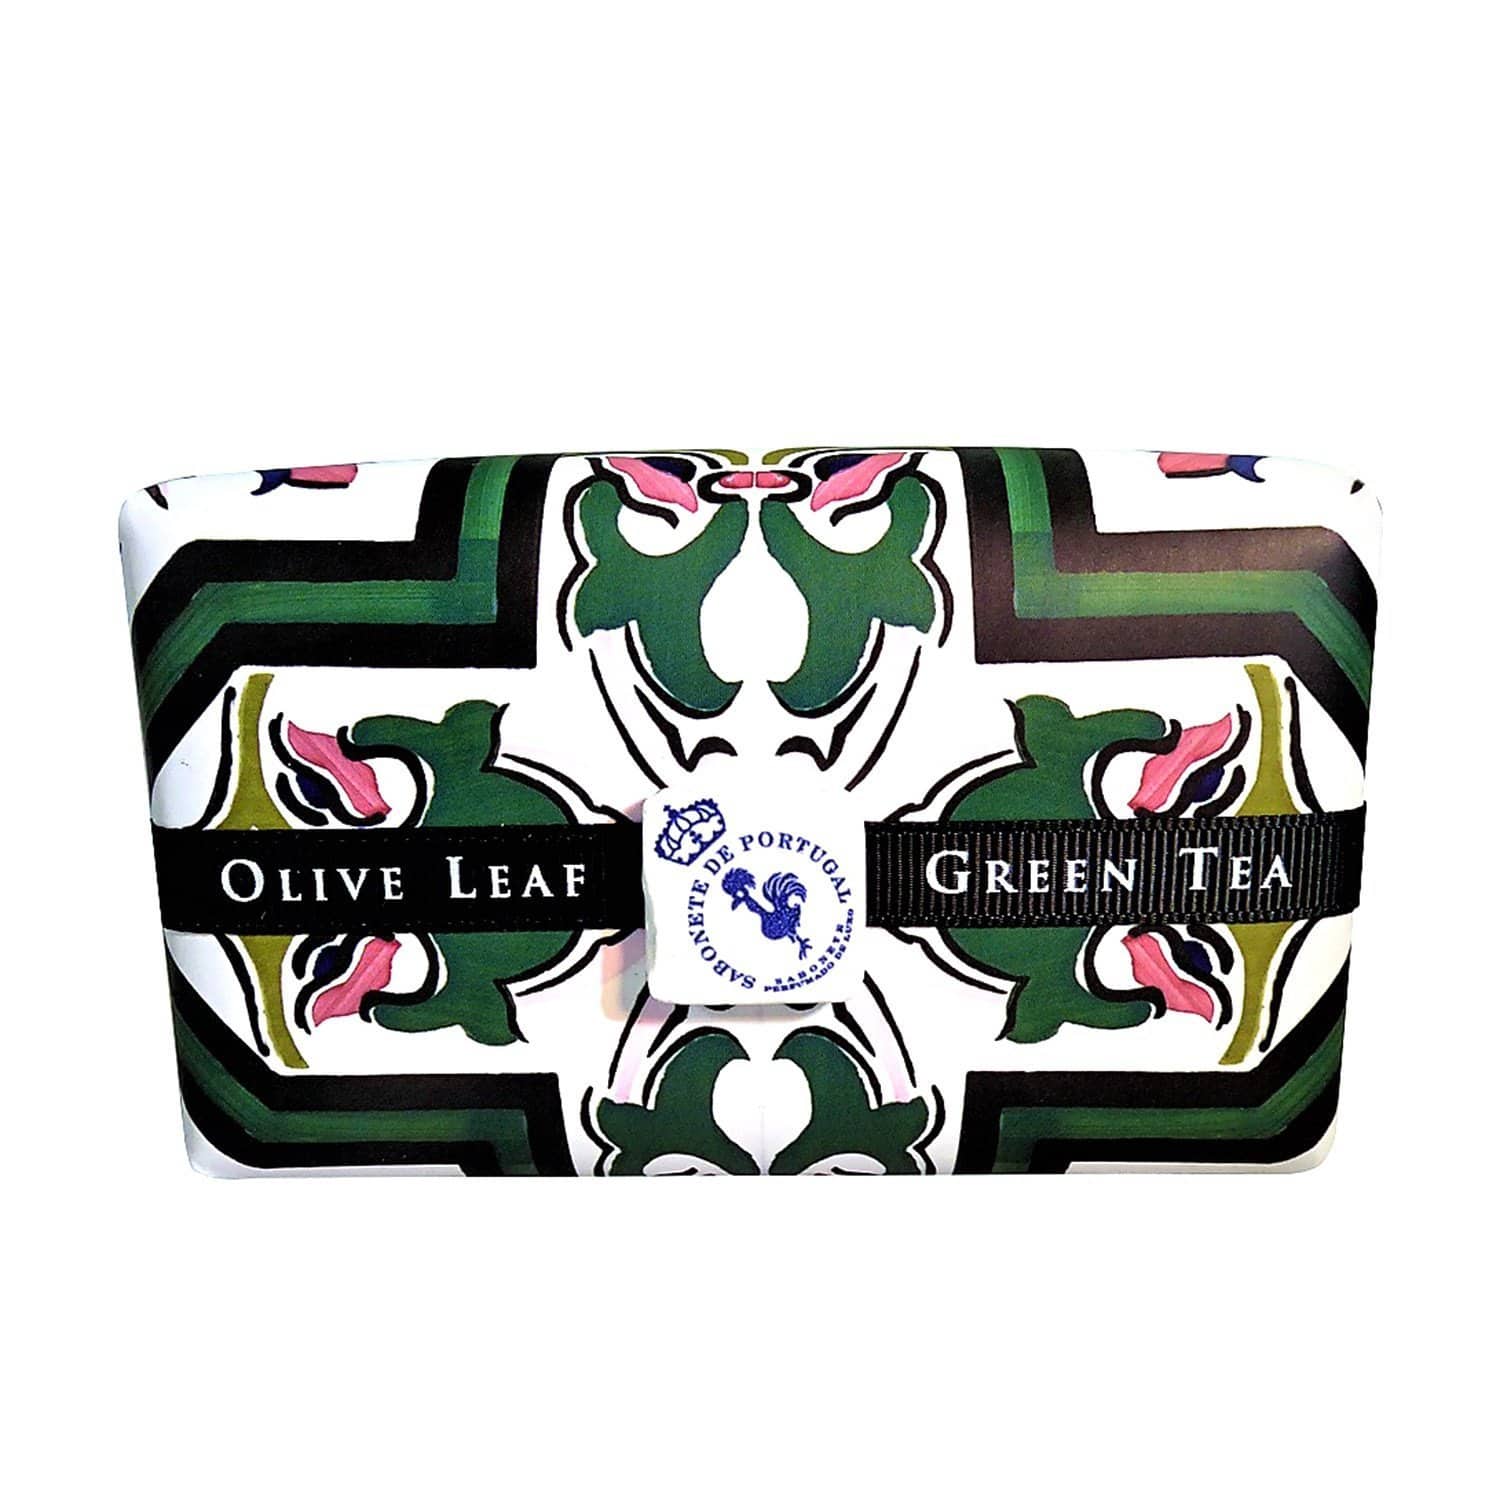 Castelbel Limited Edition 300 gms Olive Leaf and Green Tea Tile Soap - C70349 - Jashanmal Home